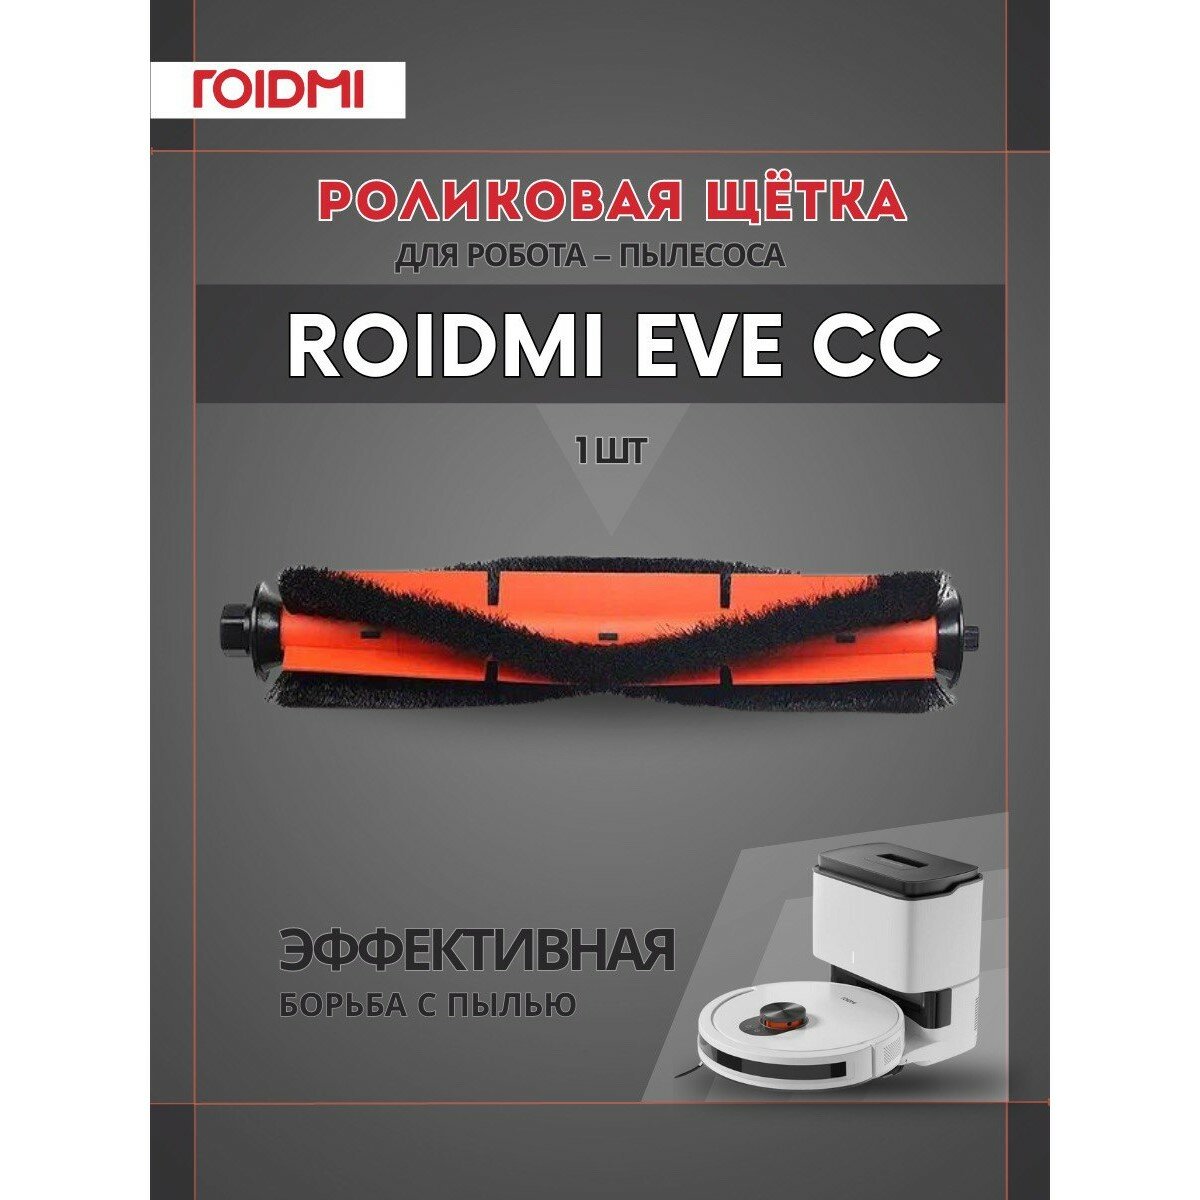 Оригинальная турбо-щетка ROIDMI для робота-пылесоса ROIDMI EVE CC, оранжевый